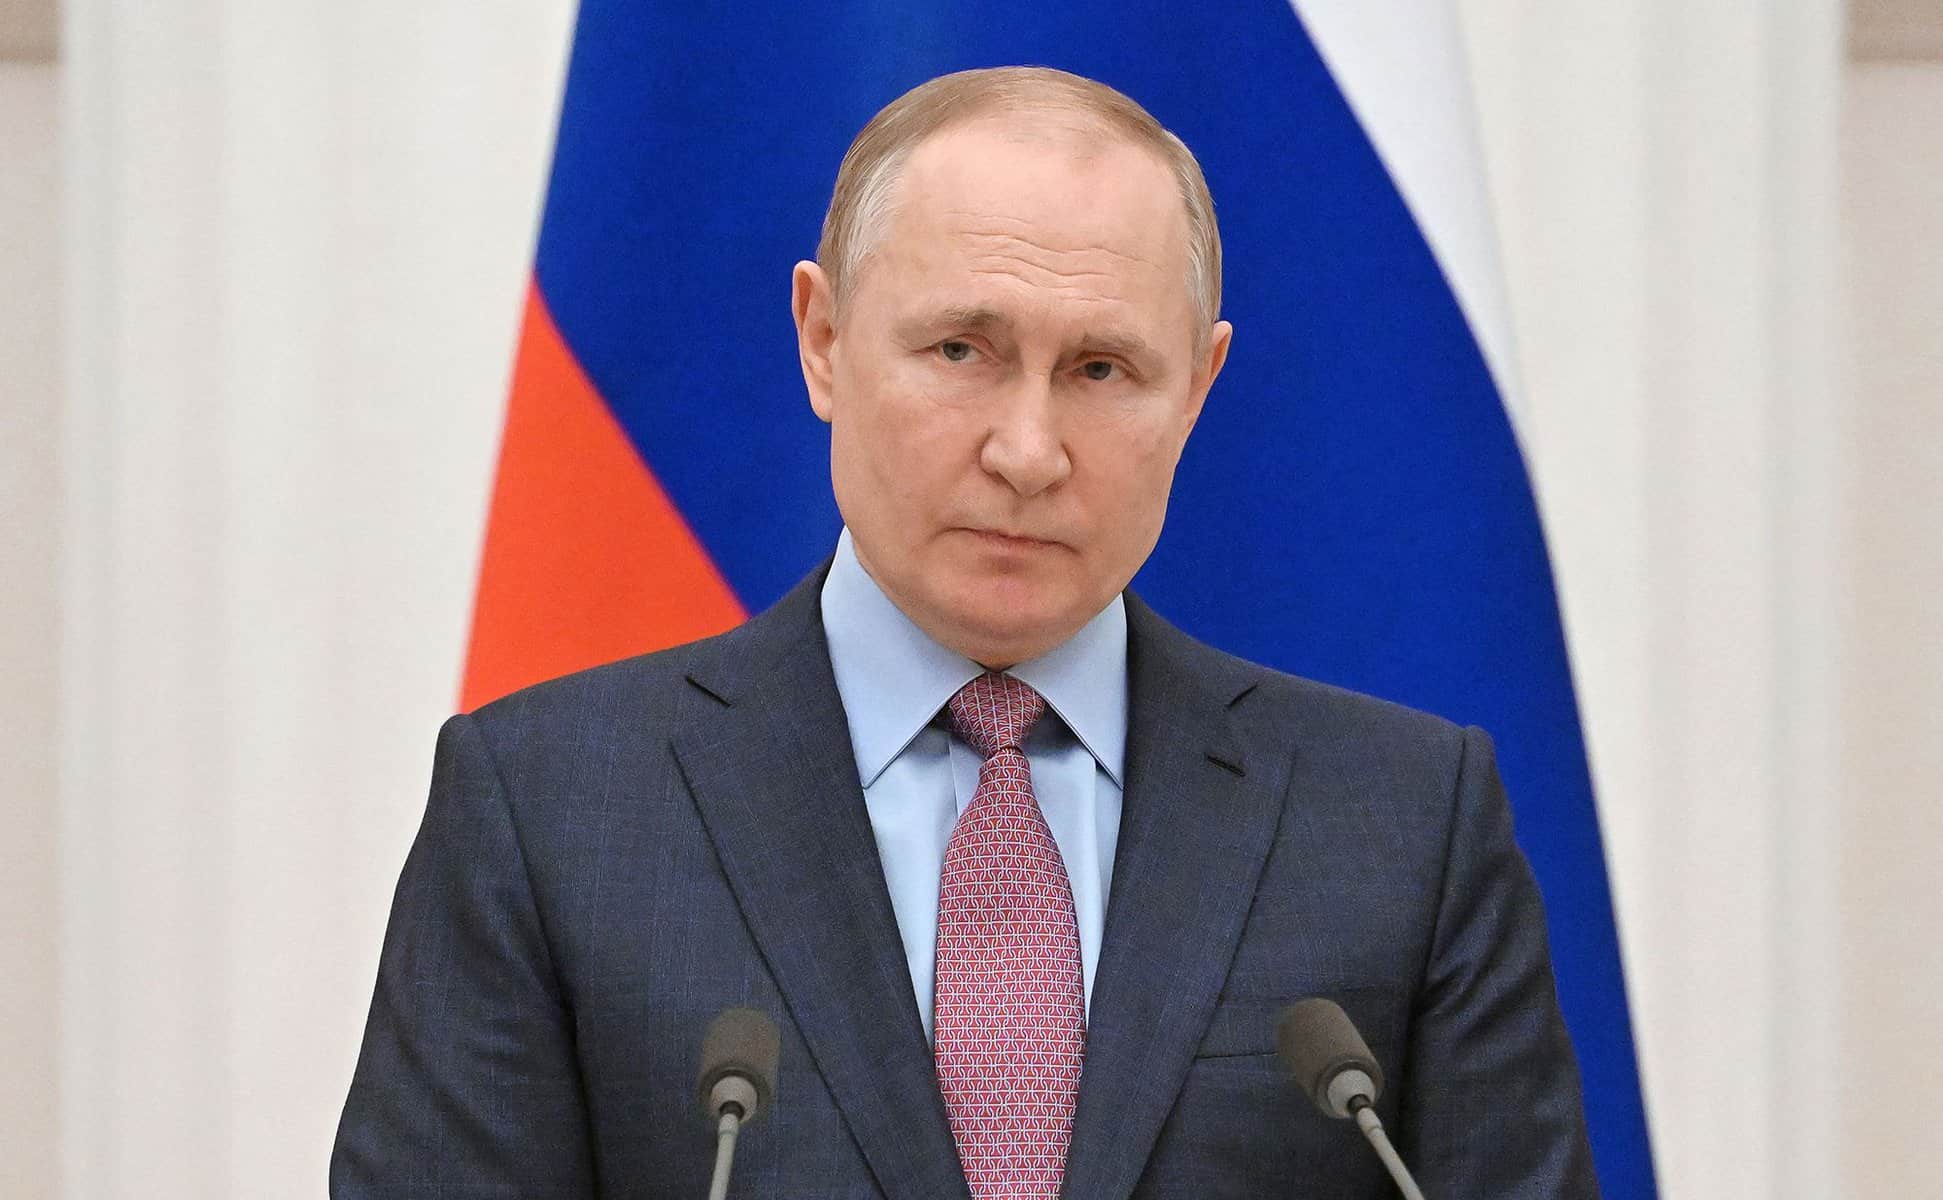 declarație controversată despre viitorul lui putin în fruntea rusiei, făcută